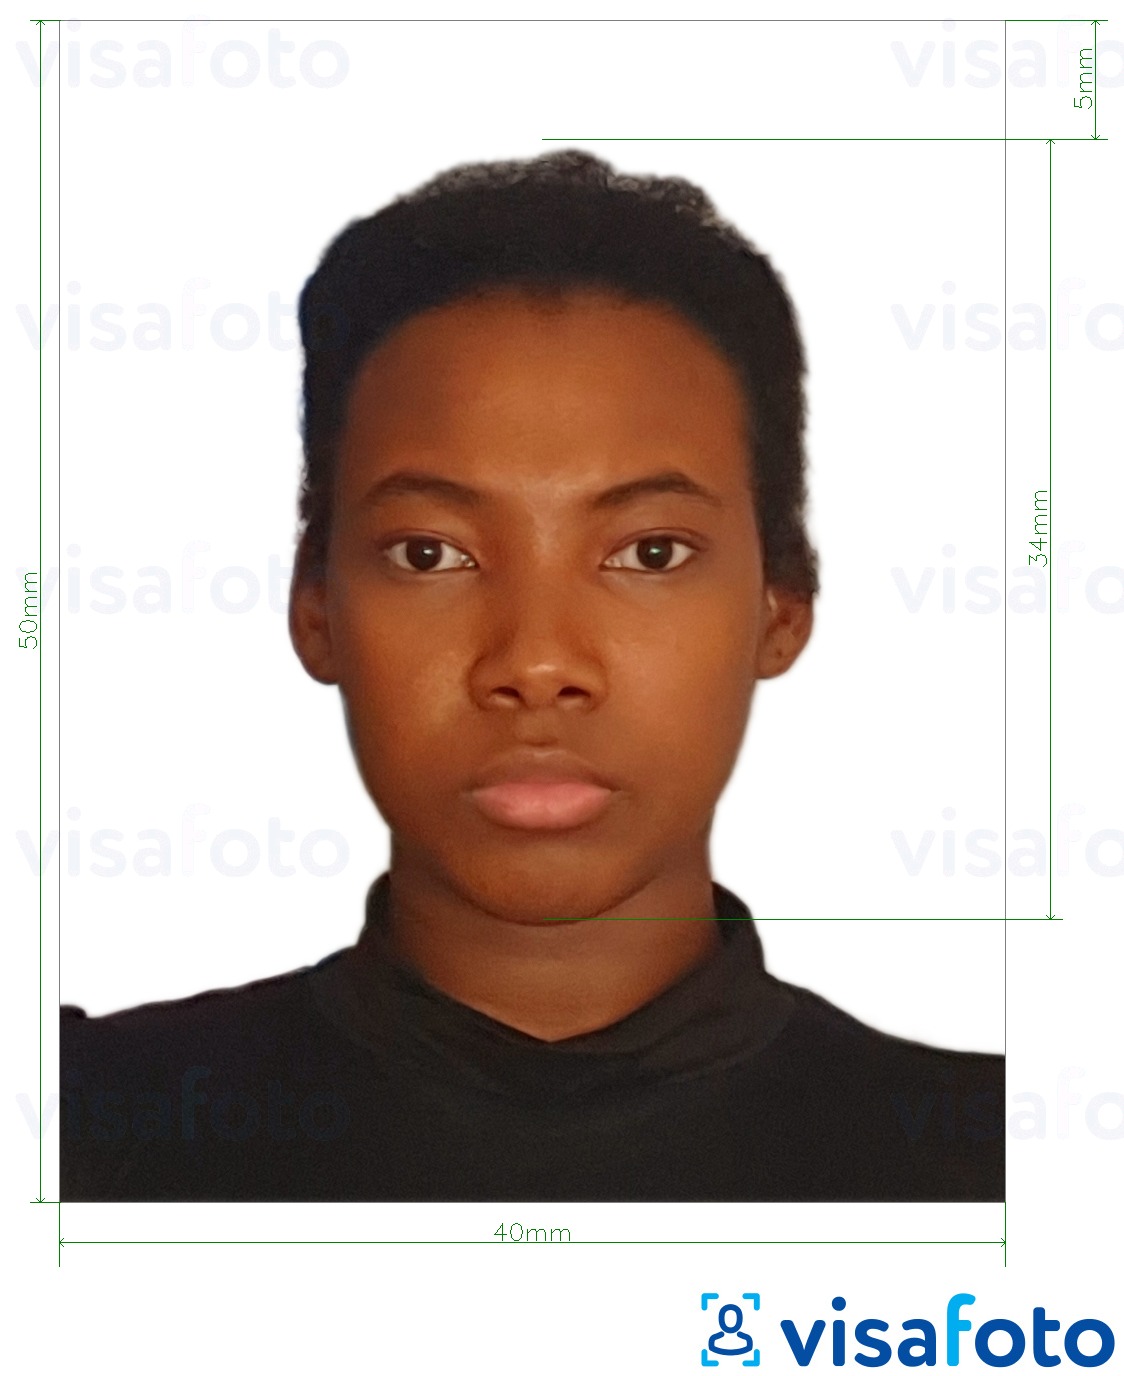 Contoh dari foto untuk Visa Republik Dominika 4x5 cm dengan ukuran spesifikasi yang tepat